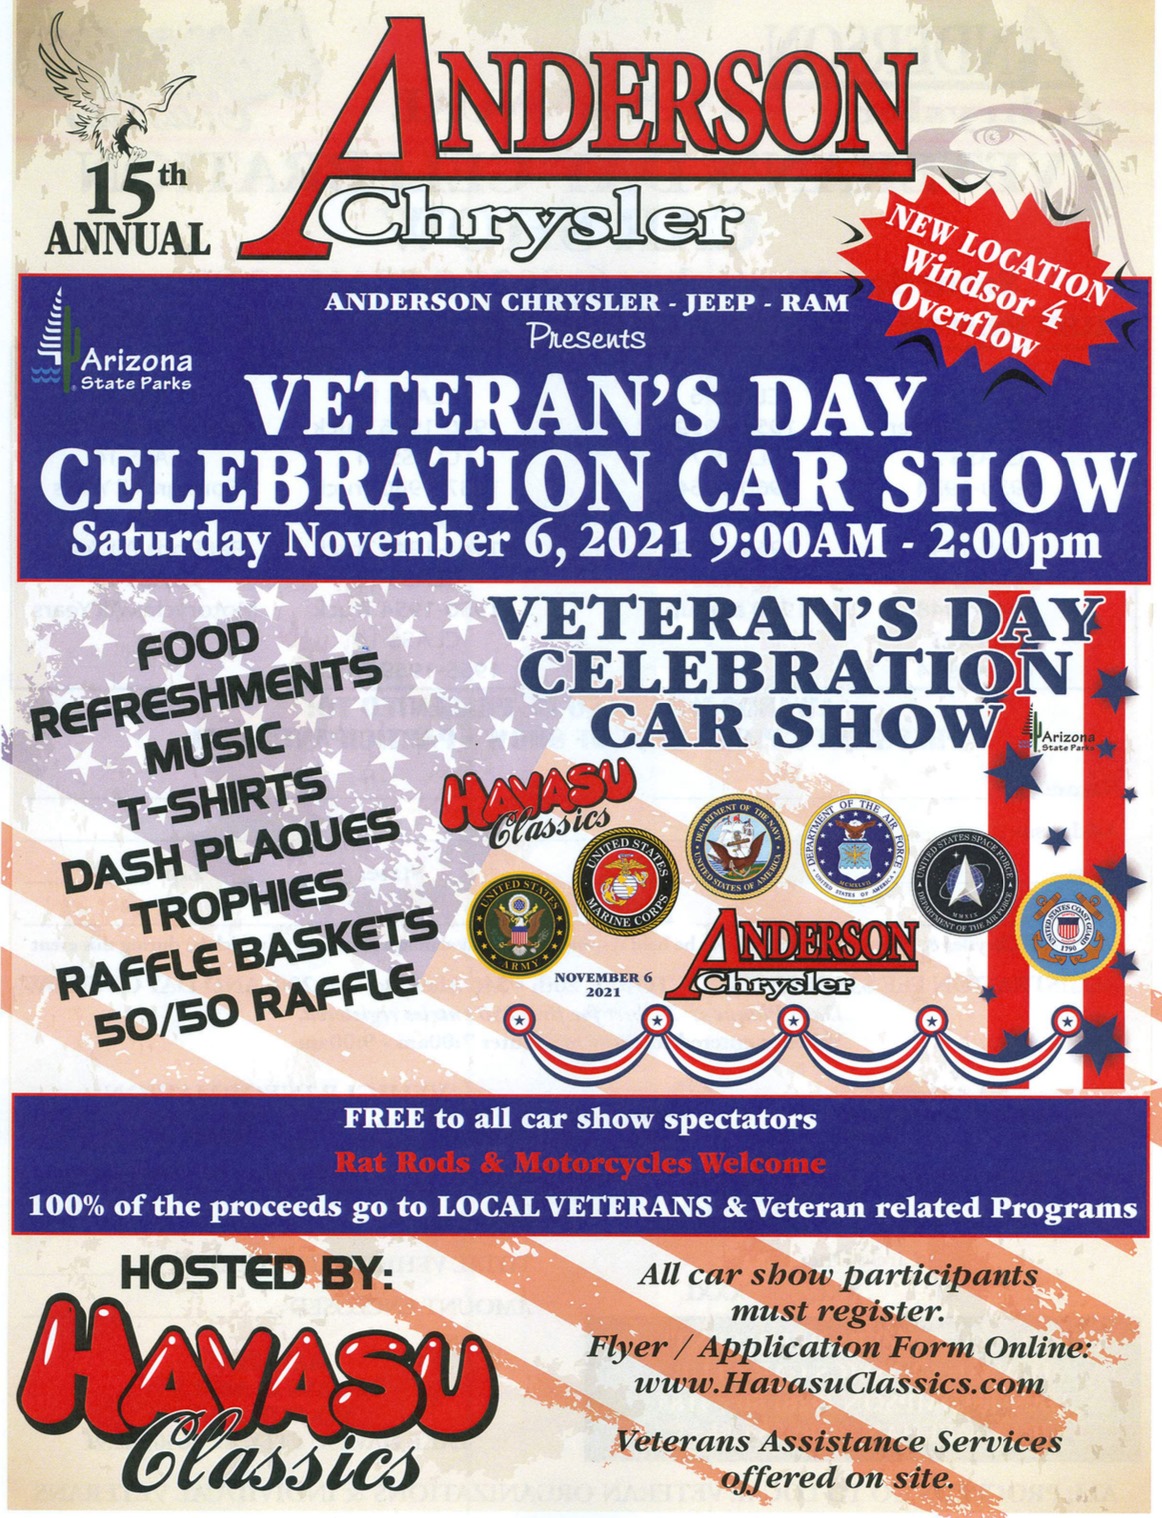 Anderson Chrysler’s Veterans Celebration Car Show